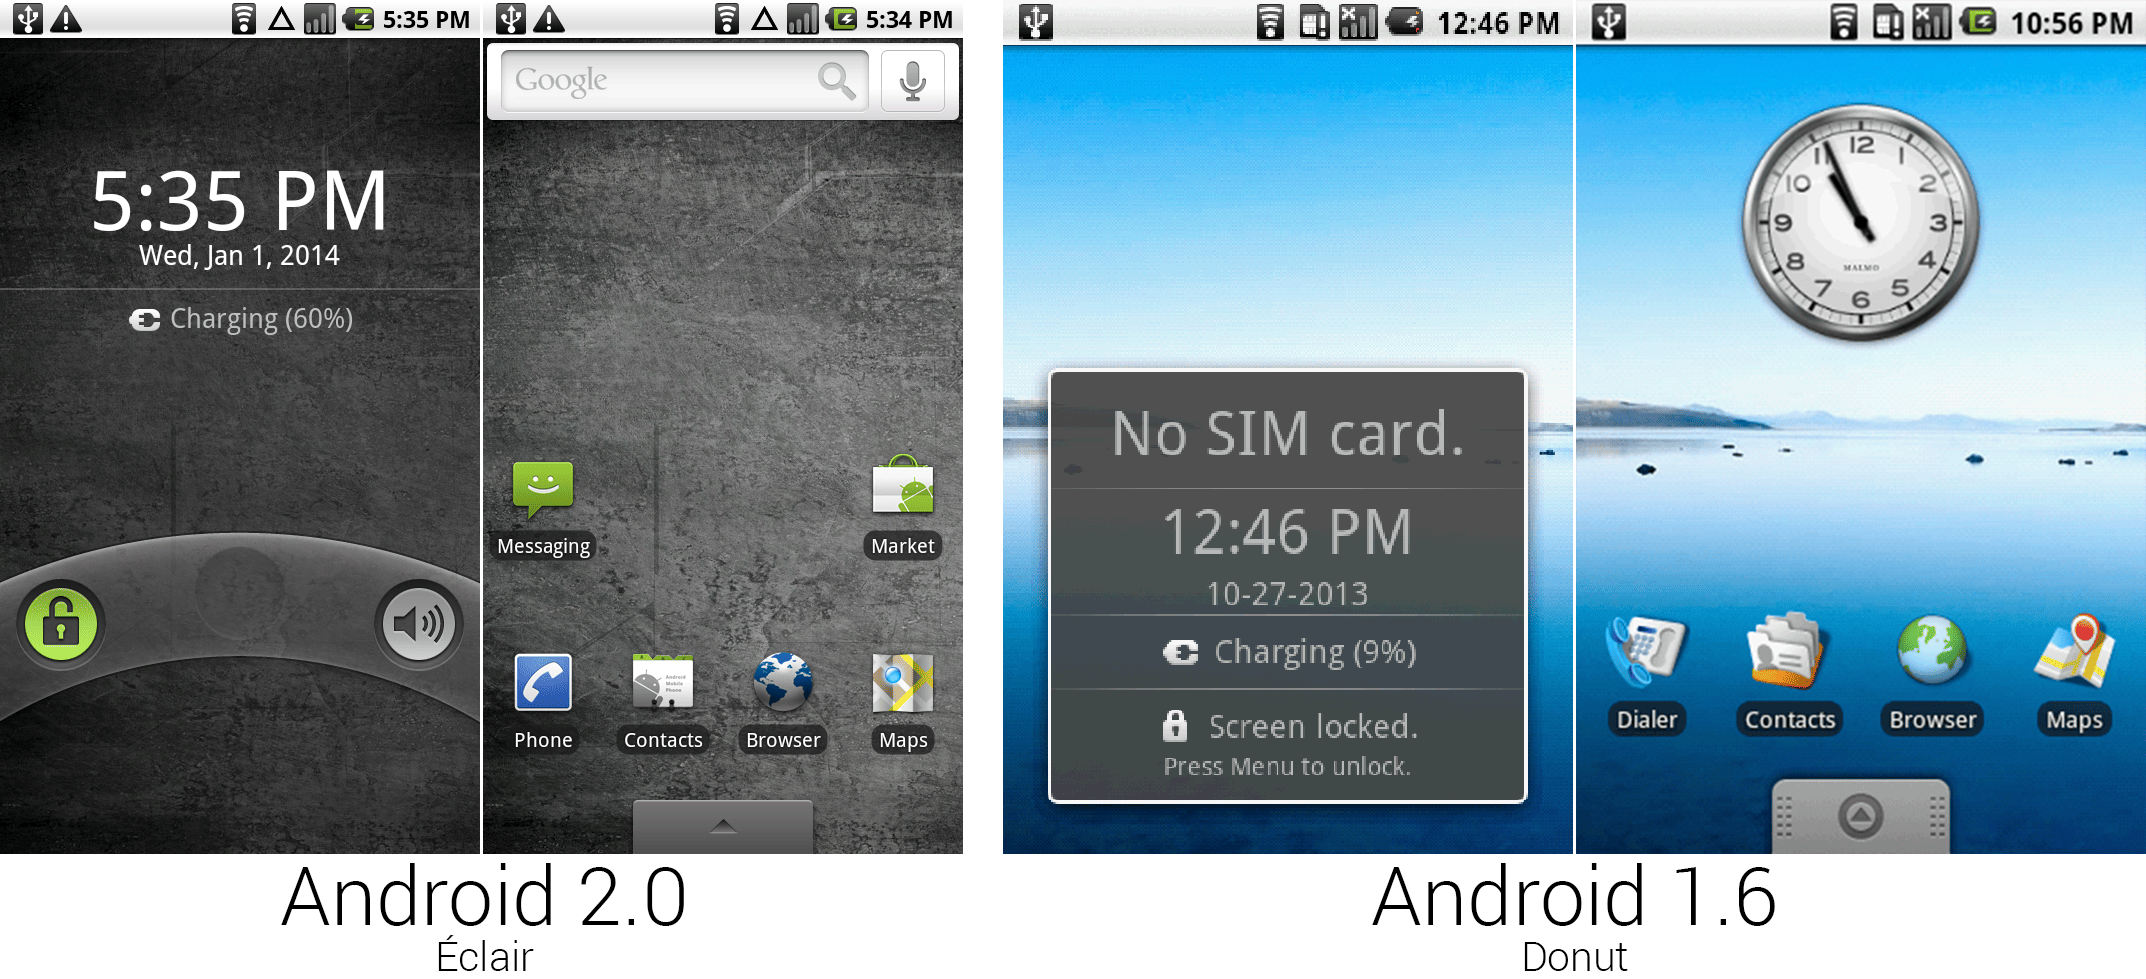 安卓2.0和1.6的锁屏和主屏幕。